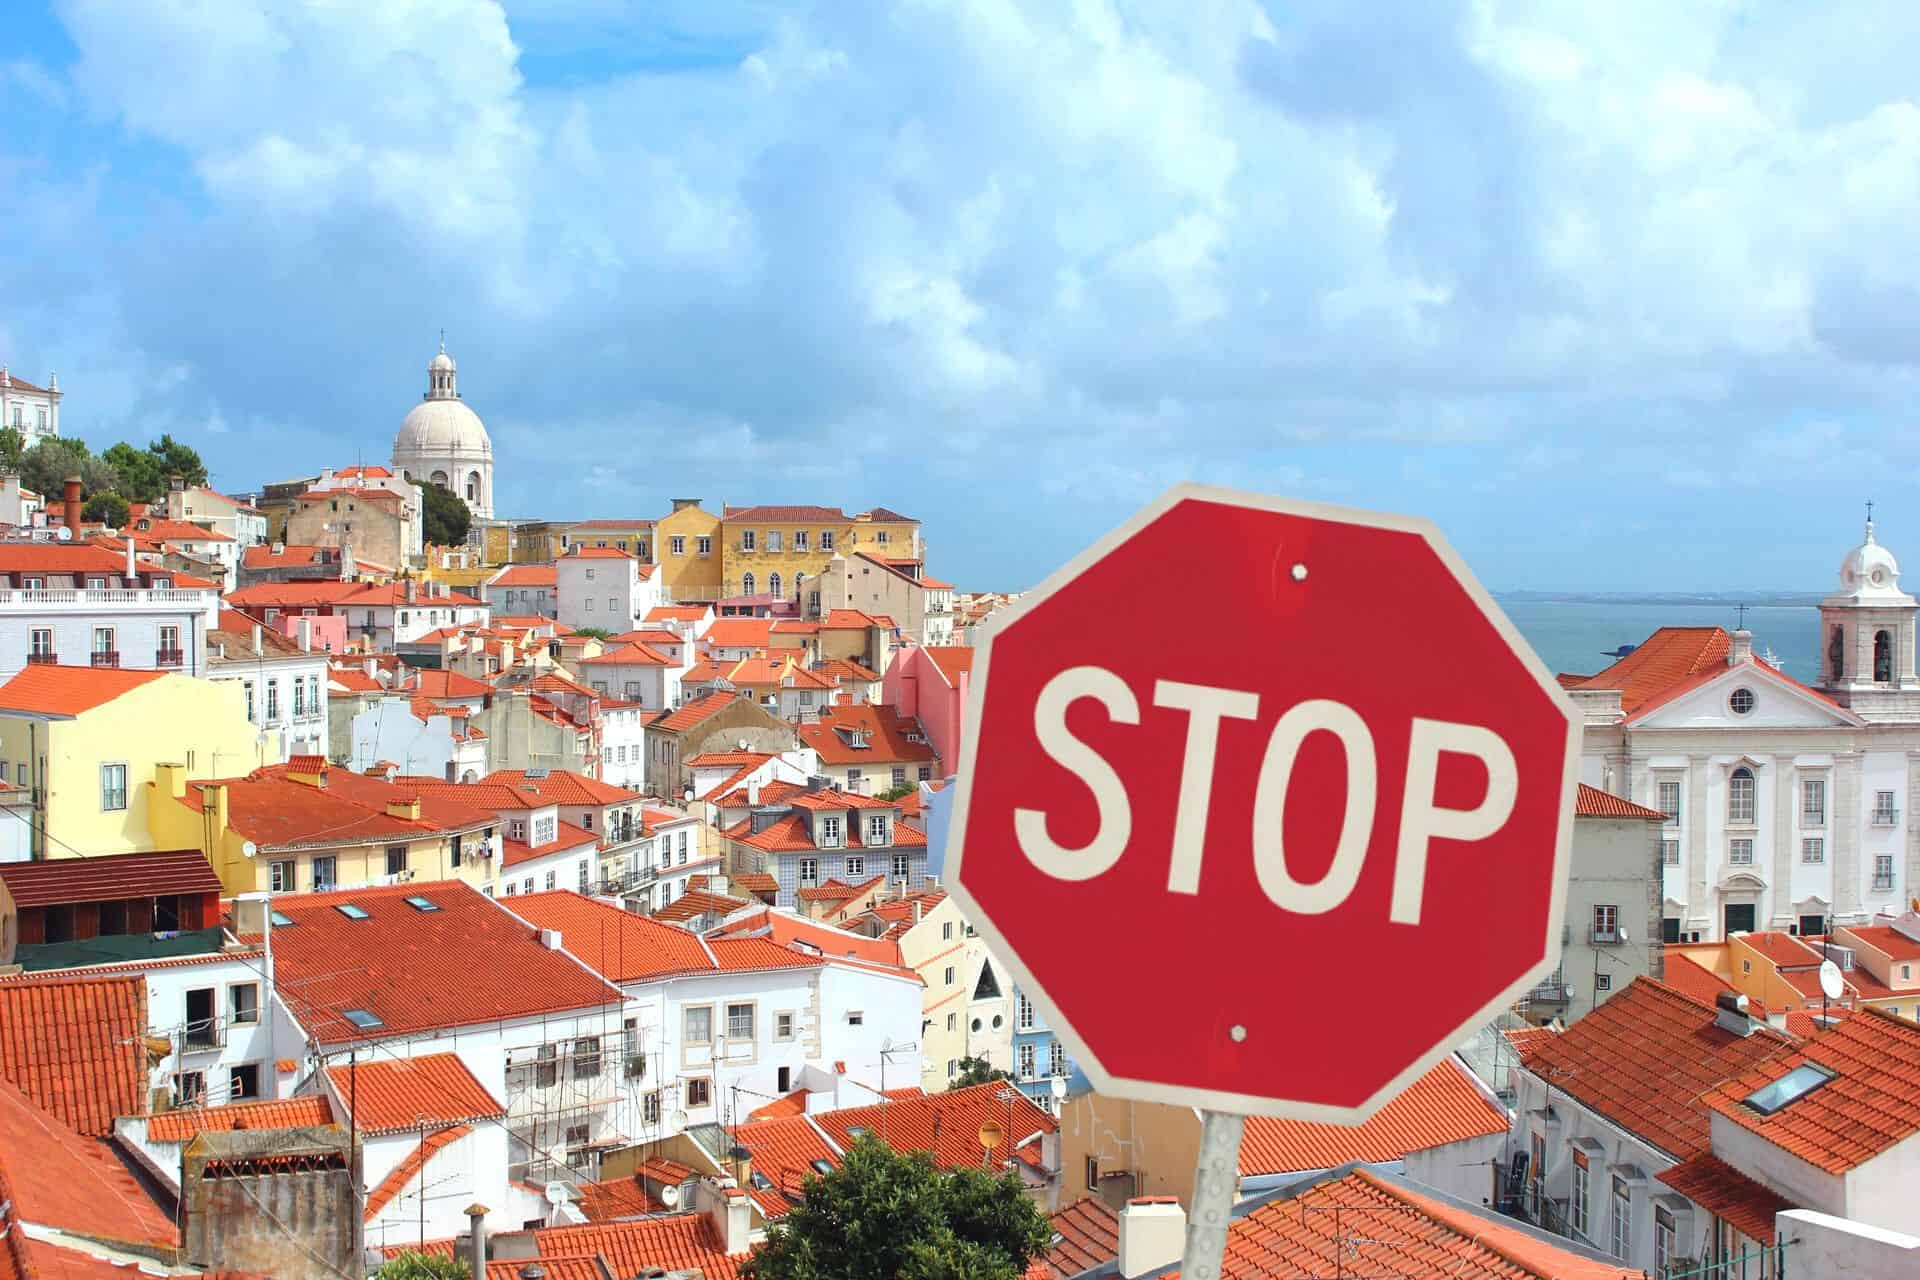 Cual es la ciudad mas bonita de portugal